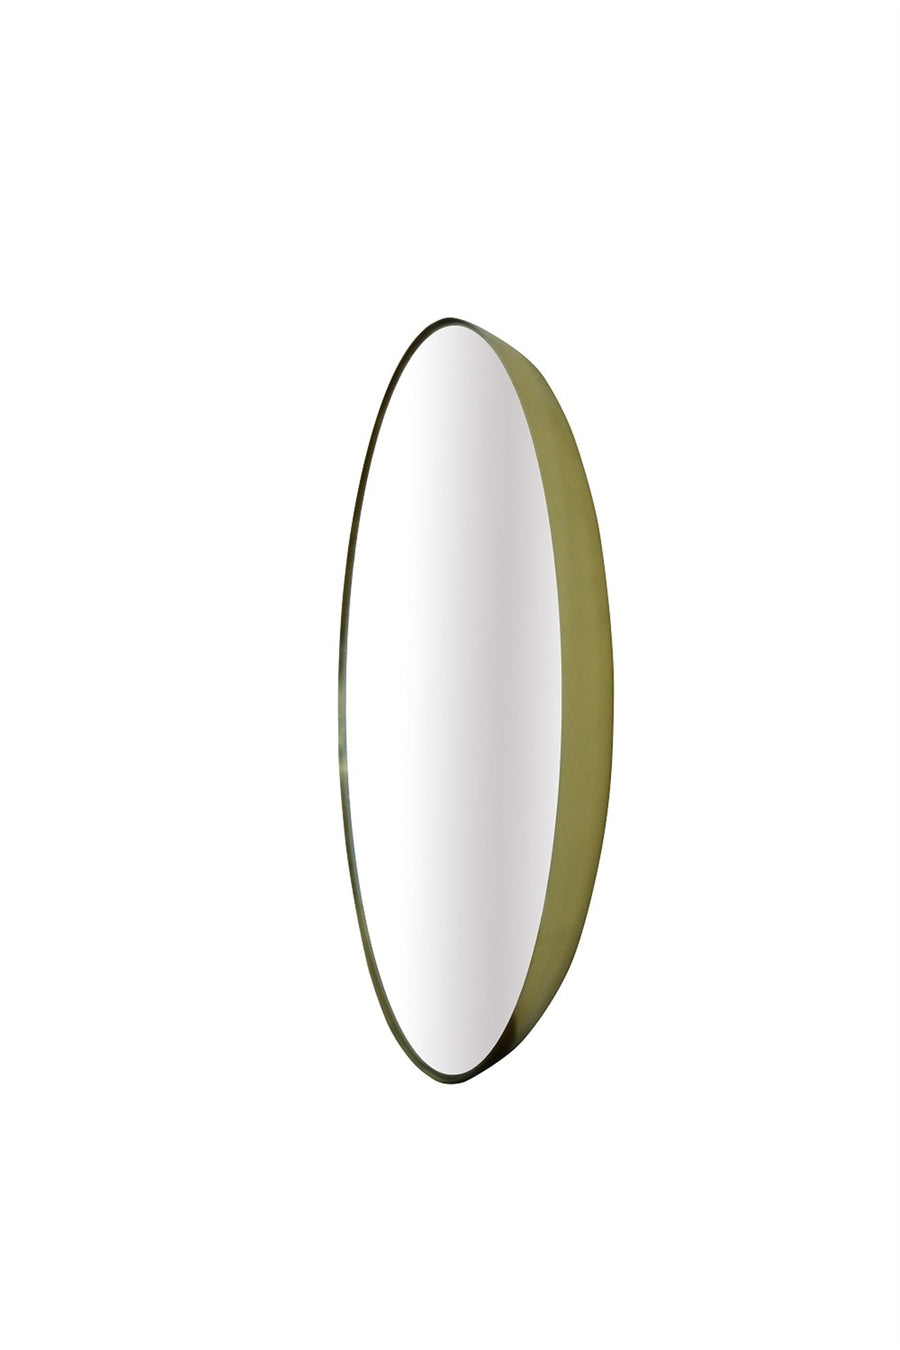 Large Round Antique Brass Mirror - #Perch#